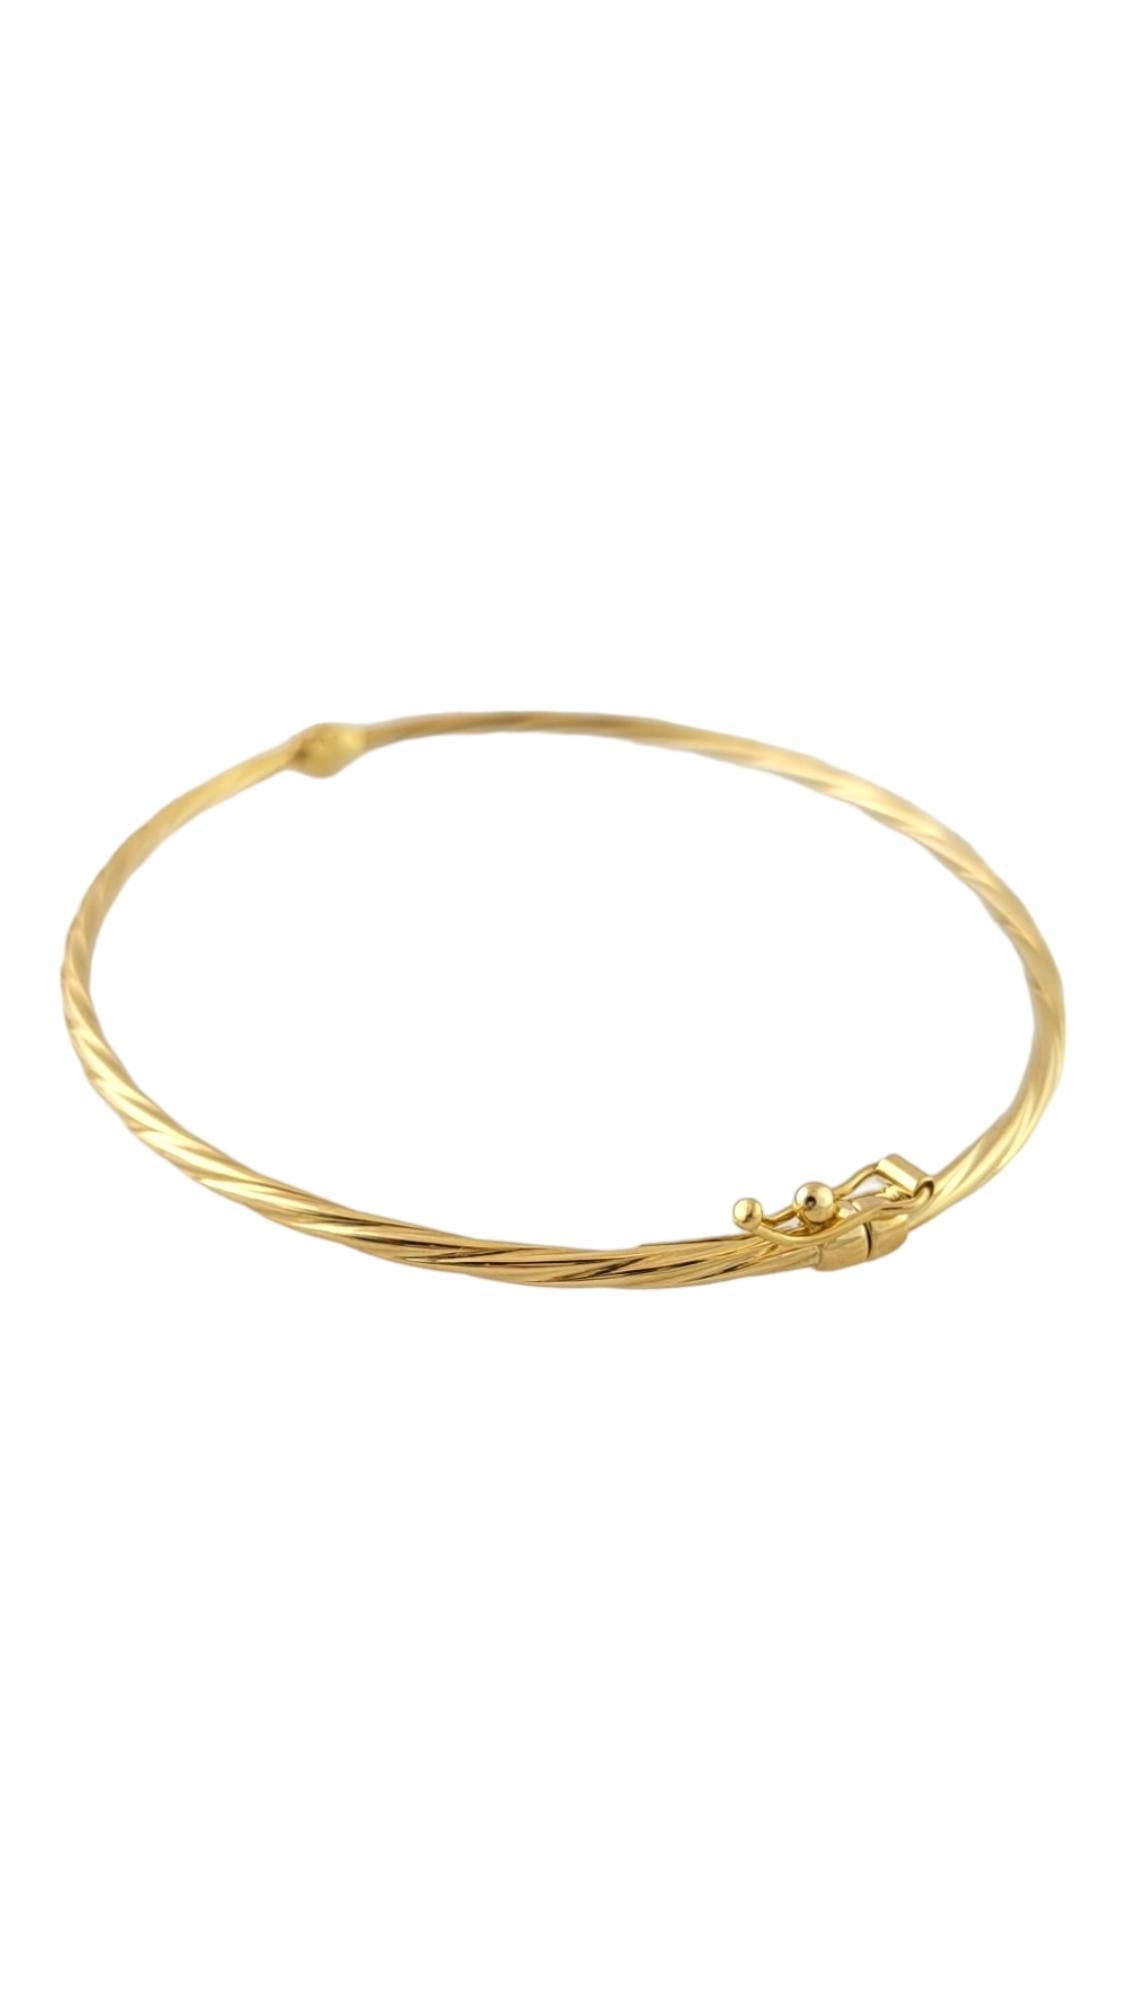 Bracelet torsadé en or jaune 18K

Ce magnifique bracelet torsadé en or jaune 18 carats a un look simple mais magnifique qui conviendra à tout le monde !

Taille : 6.5